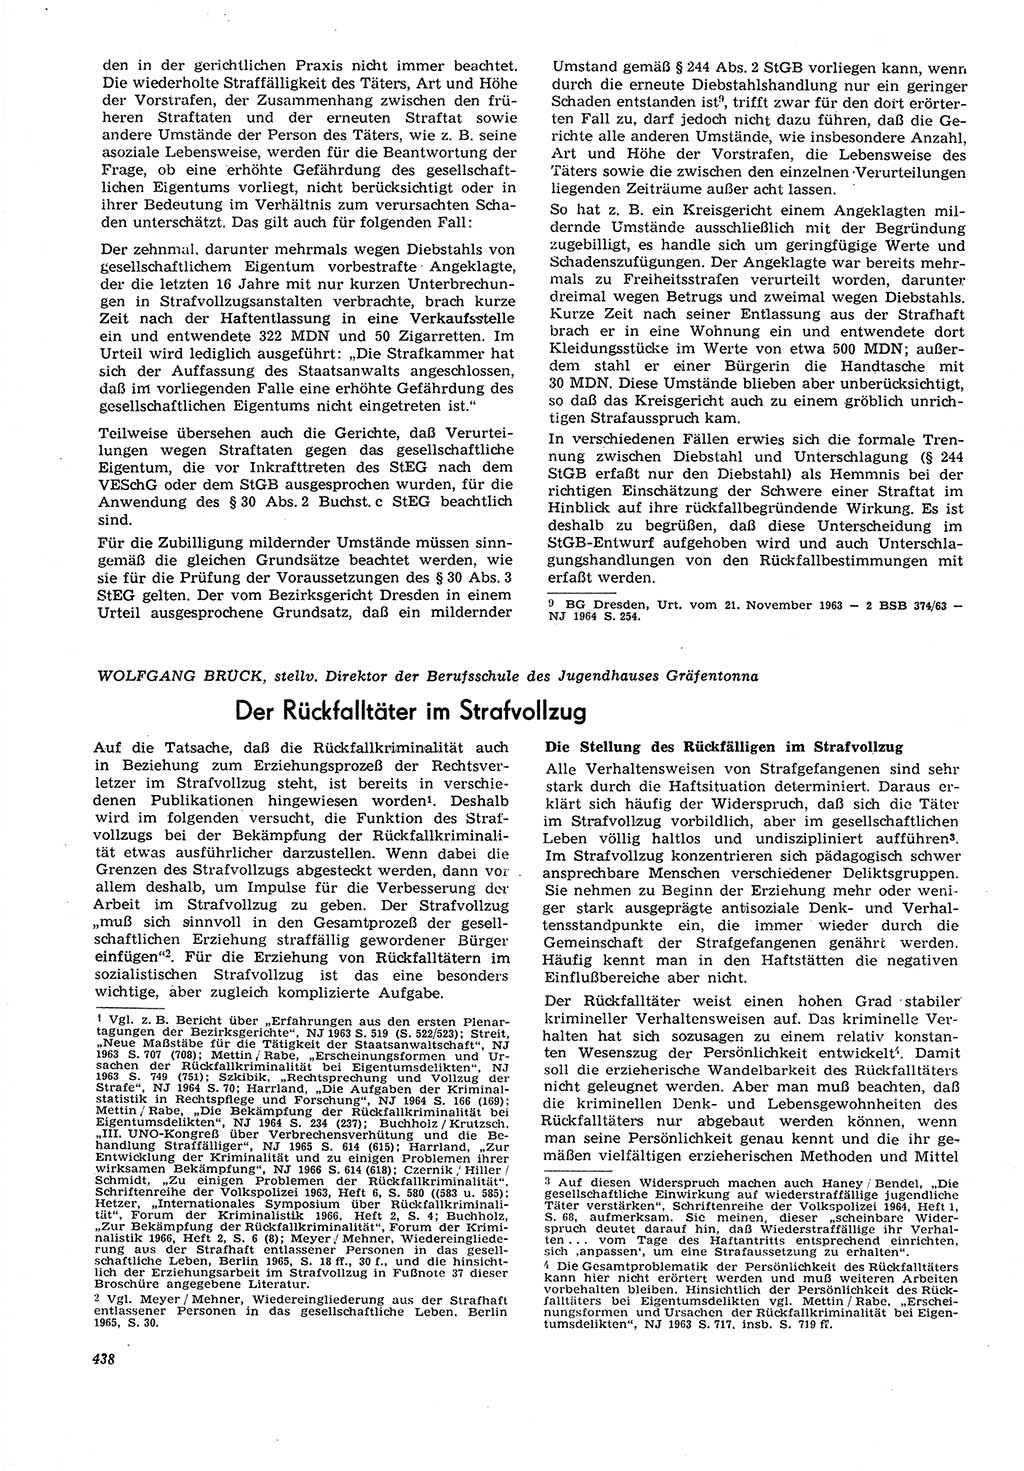 Neue Justiz (NJ), Zeitschrift für Recht und Rechtswissenschaft [Deutsche Demokratische Republik (DDR)], 21. Jahrgang 1967, Seite 438 (NJ DDR 1967, S. 438)